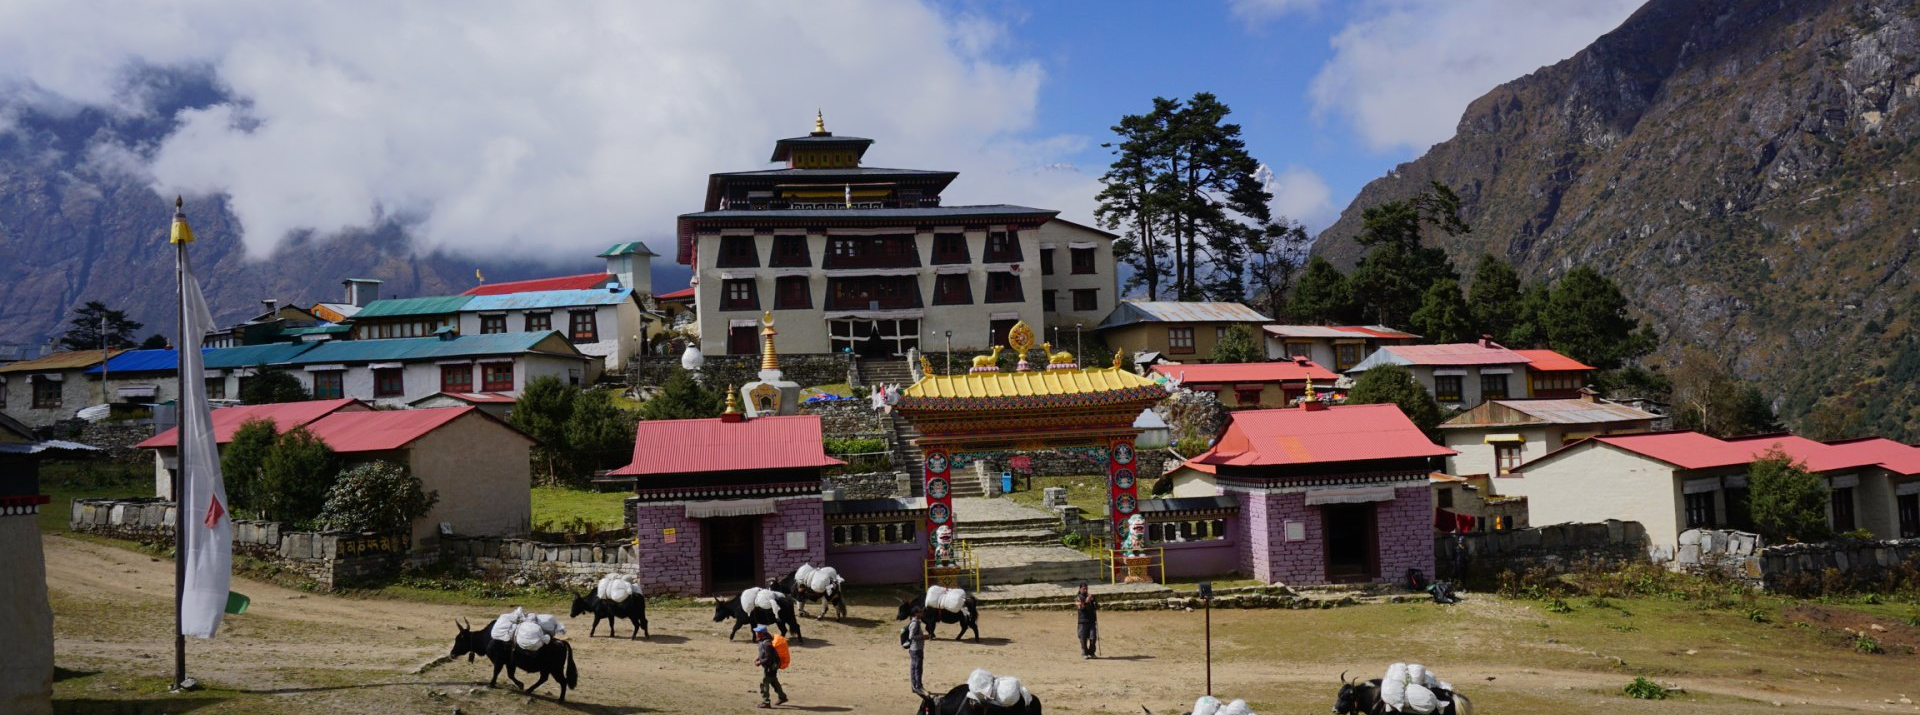 Solukhumbu Monastery Tengboche